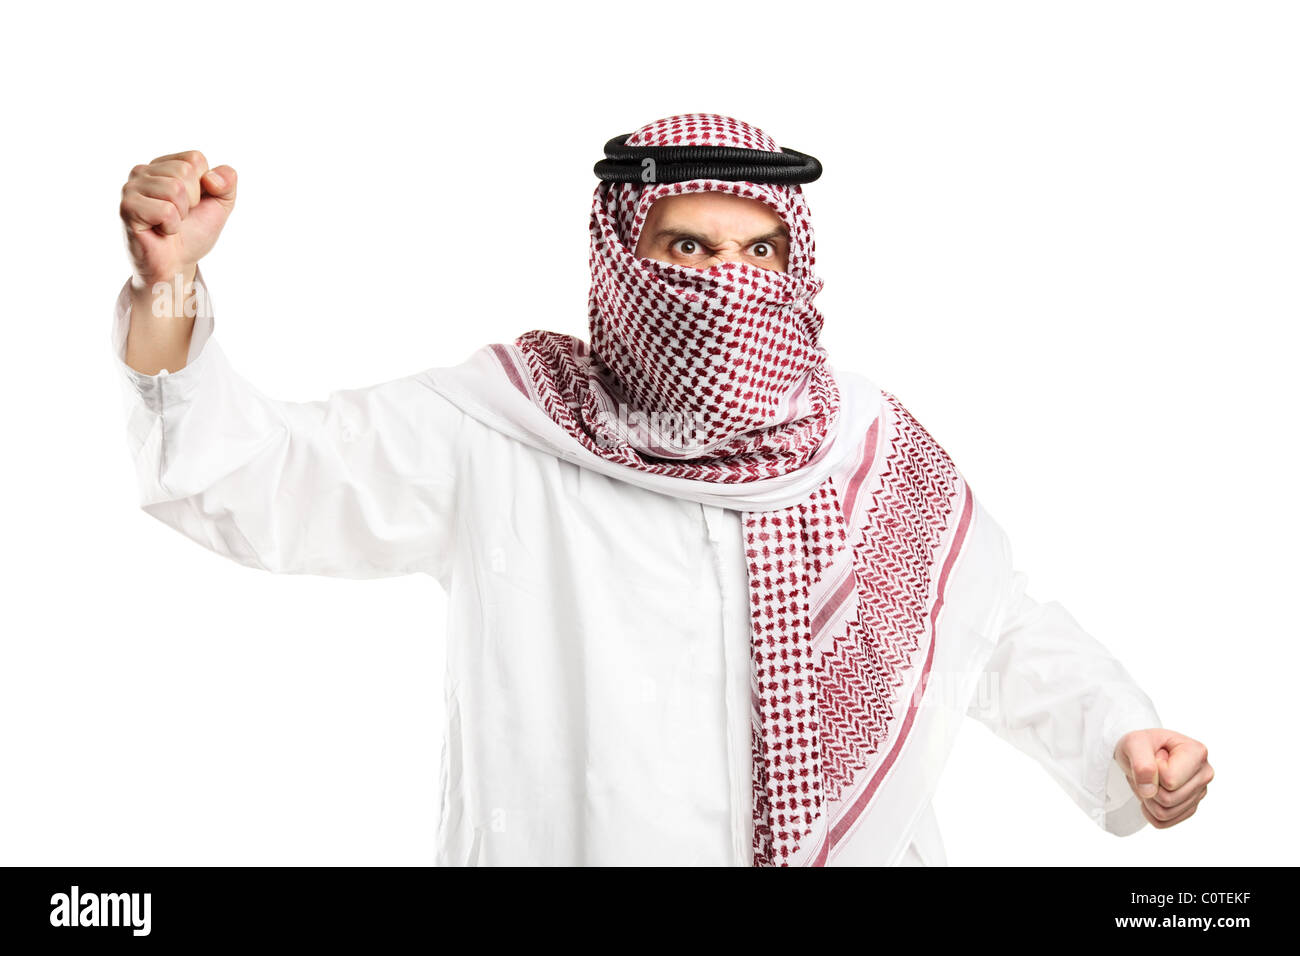 Un homme arabe furieux avec couverts pour protester face Banque D'Images